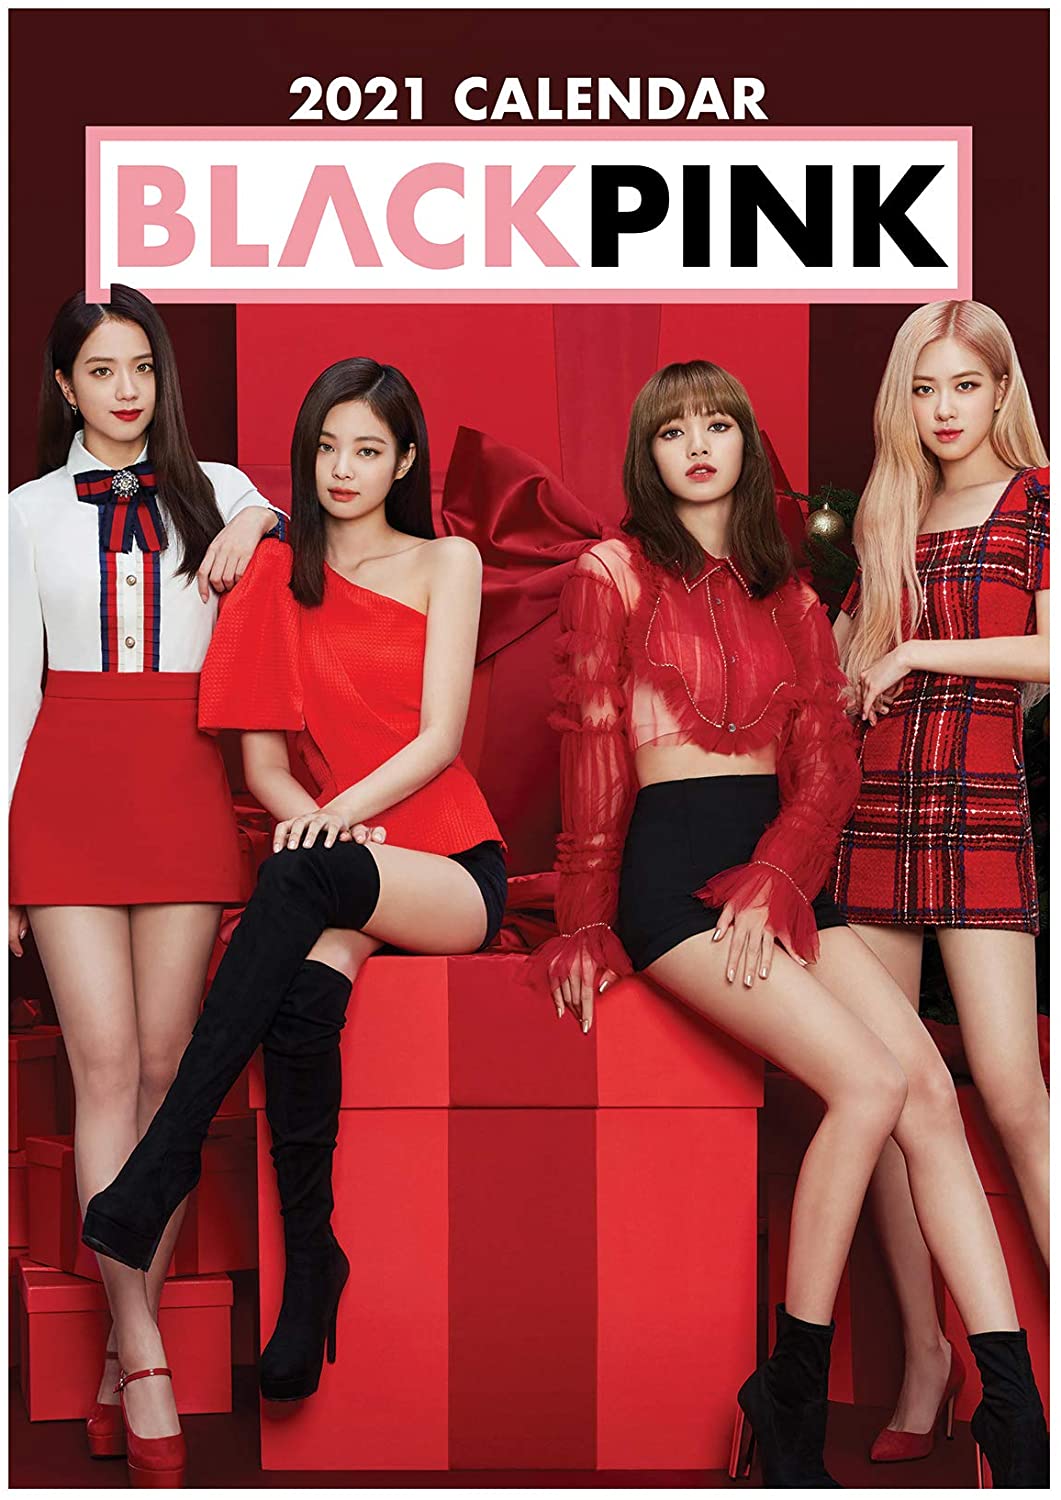 Blackpink - 2021 Unofficial Calendar - Kpop.ro Shop